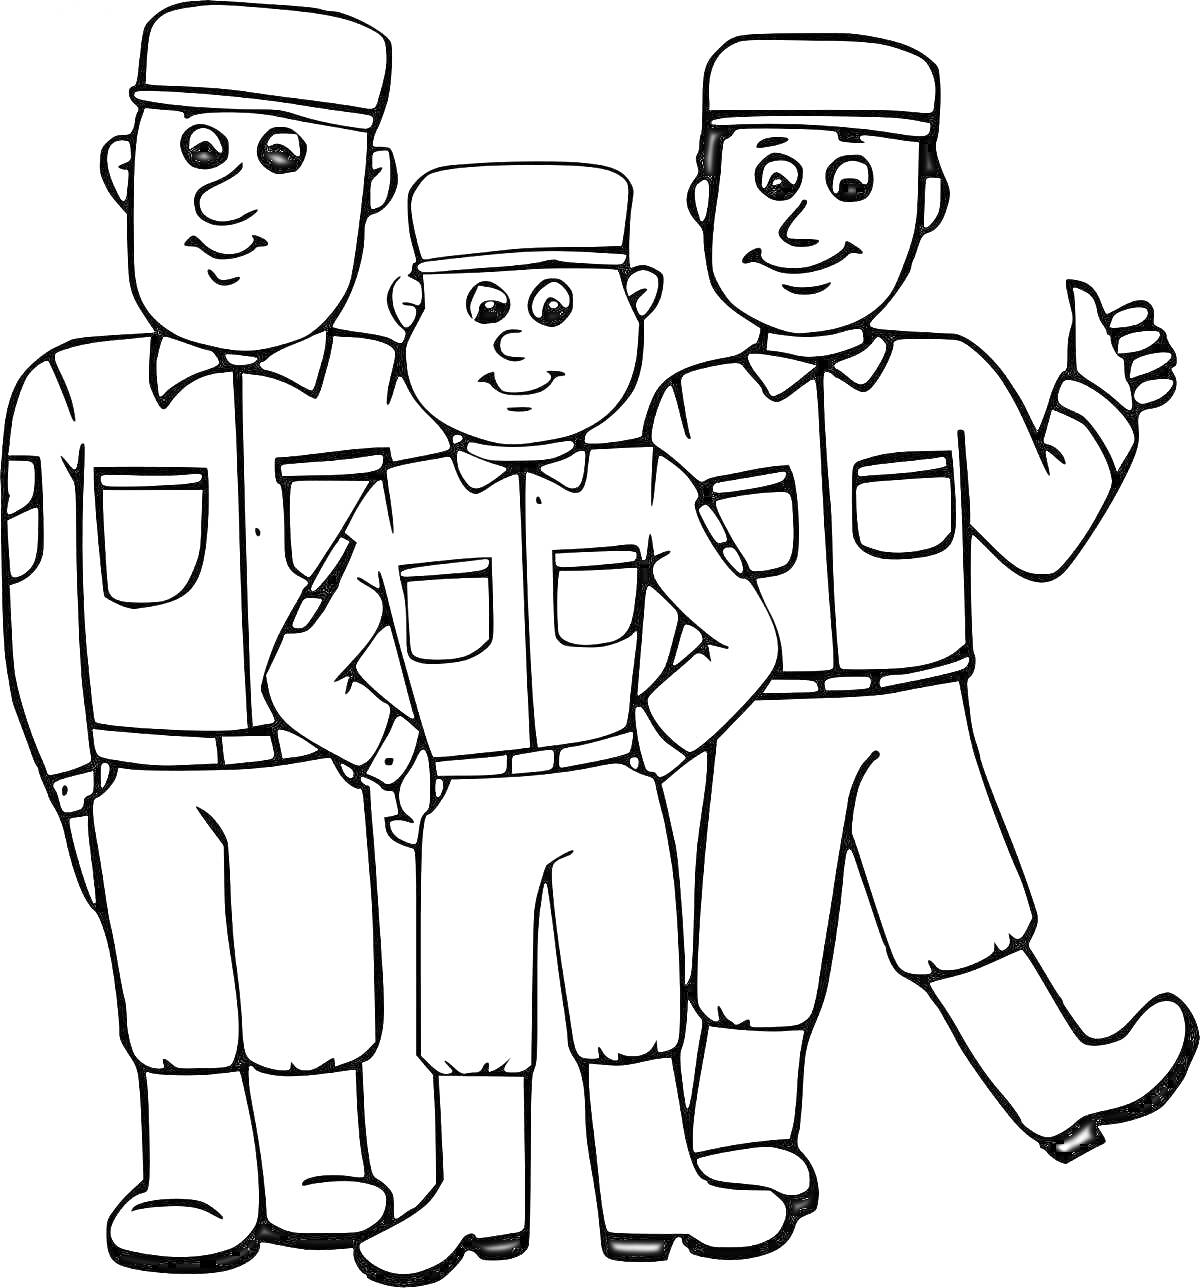 Раскраска Три солдата в форме на раскраске